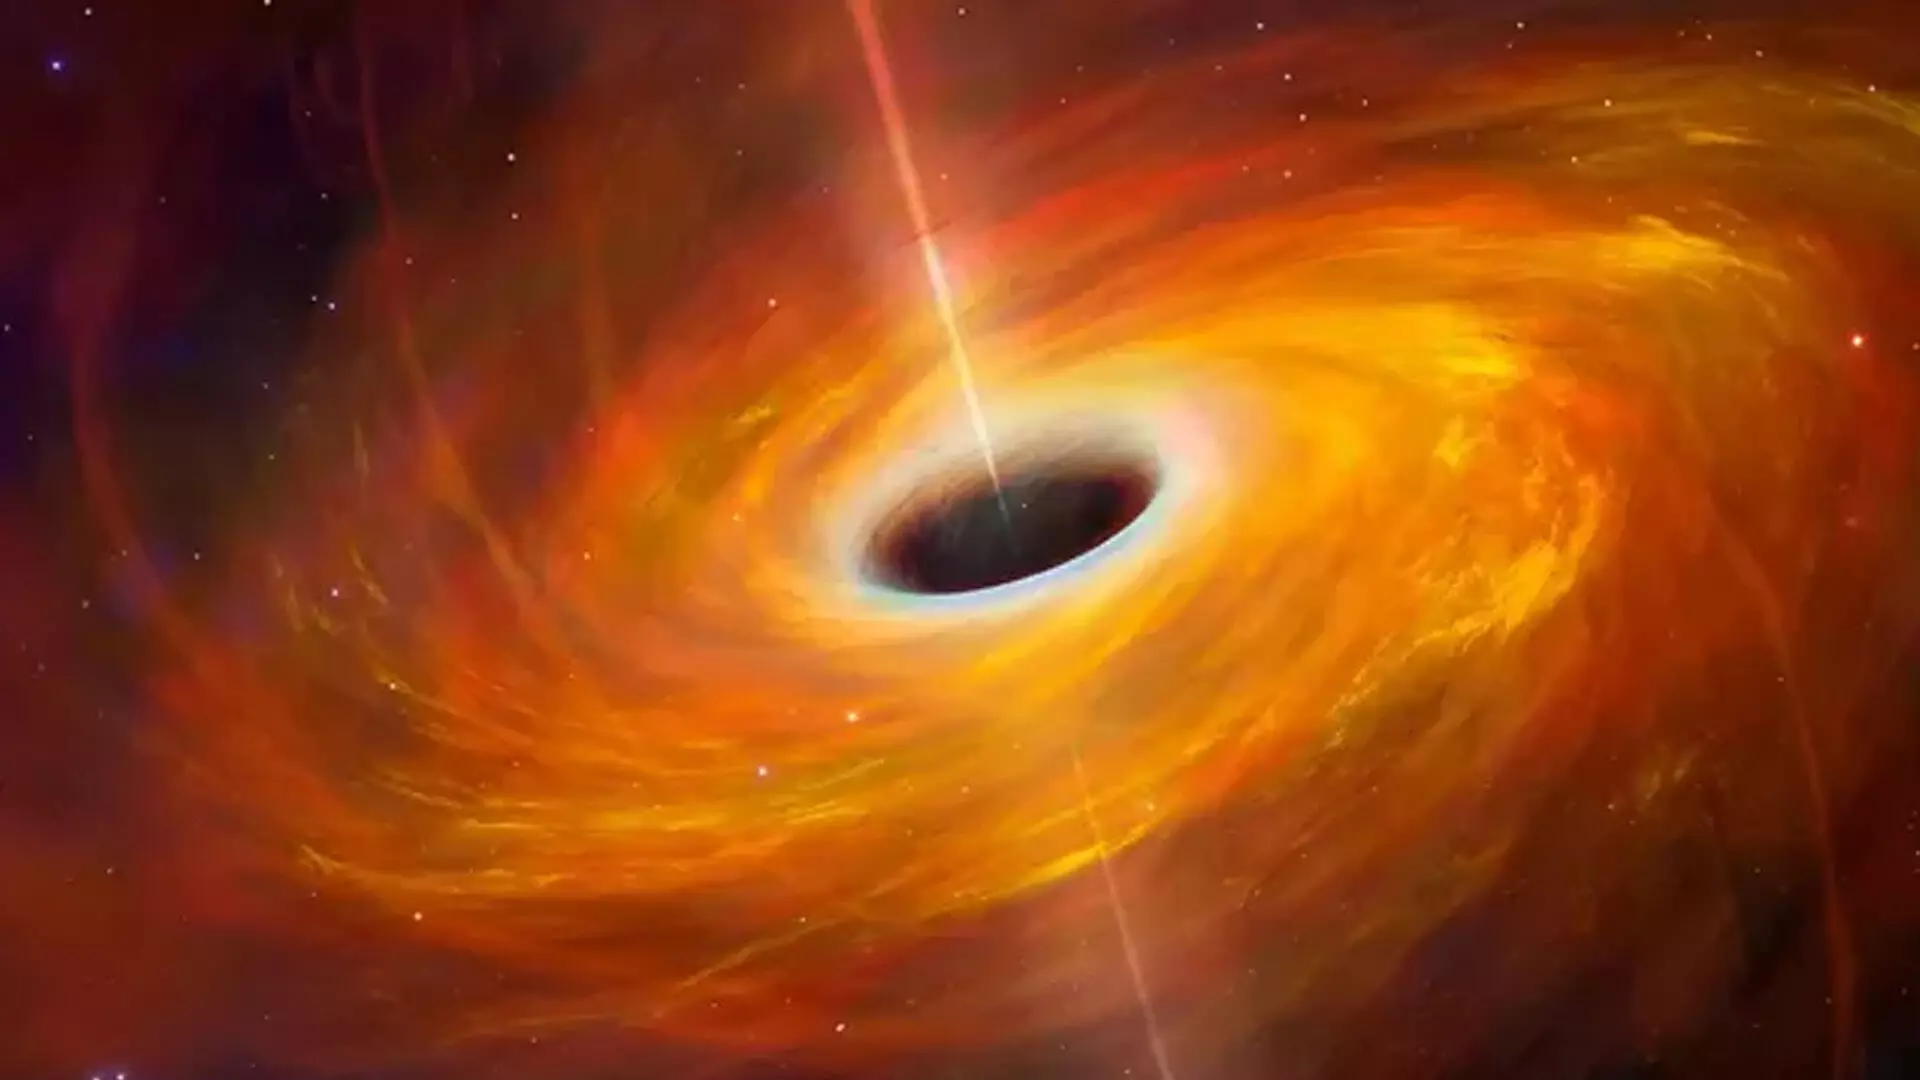 वैज्ञानिकों ने ब्लैक होल के आसपास विचित्र क्षेत्र की खोज की